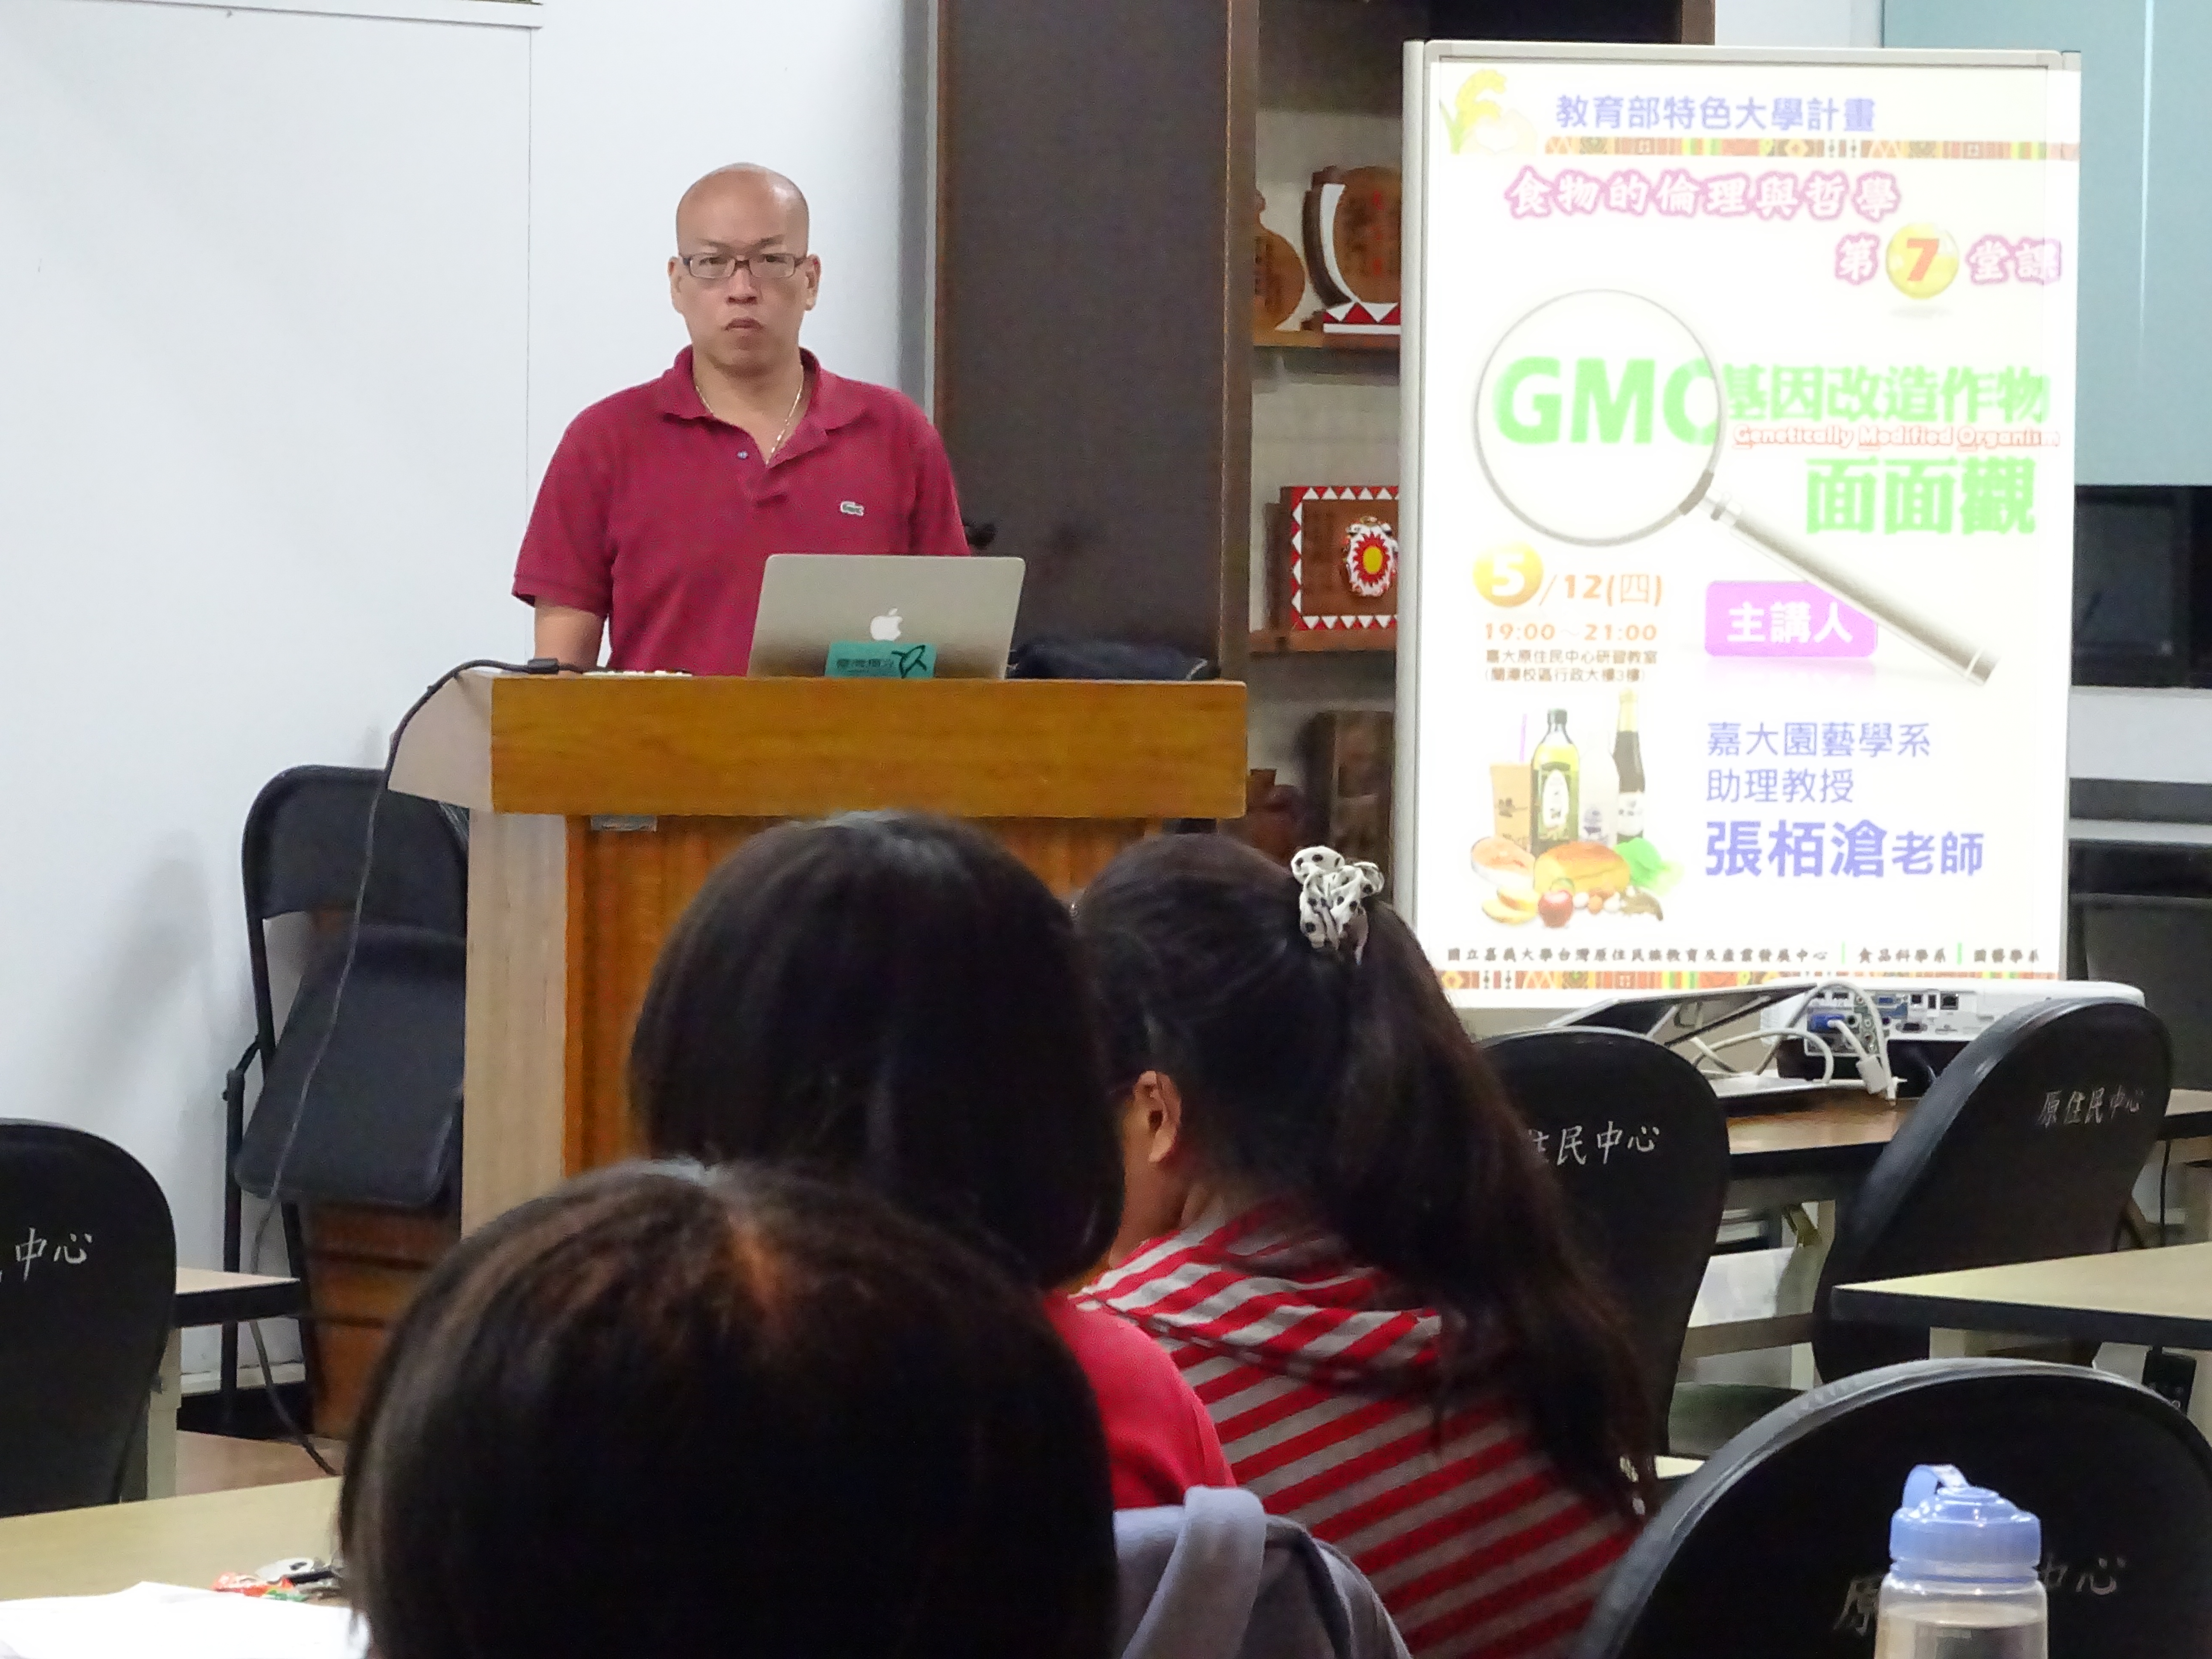 張栢滄老師講解GMO基因改造作物面面觀